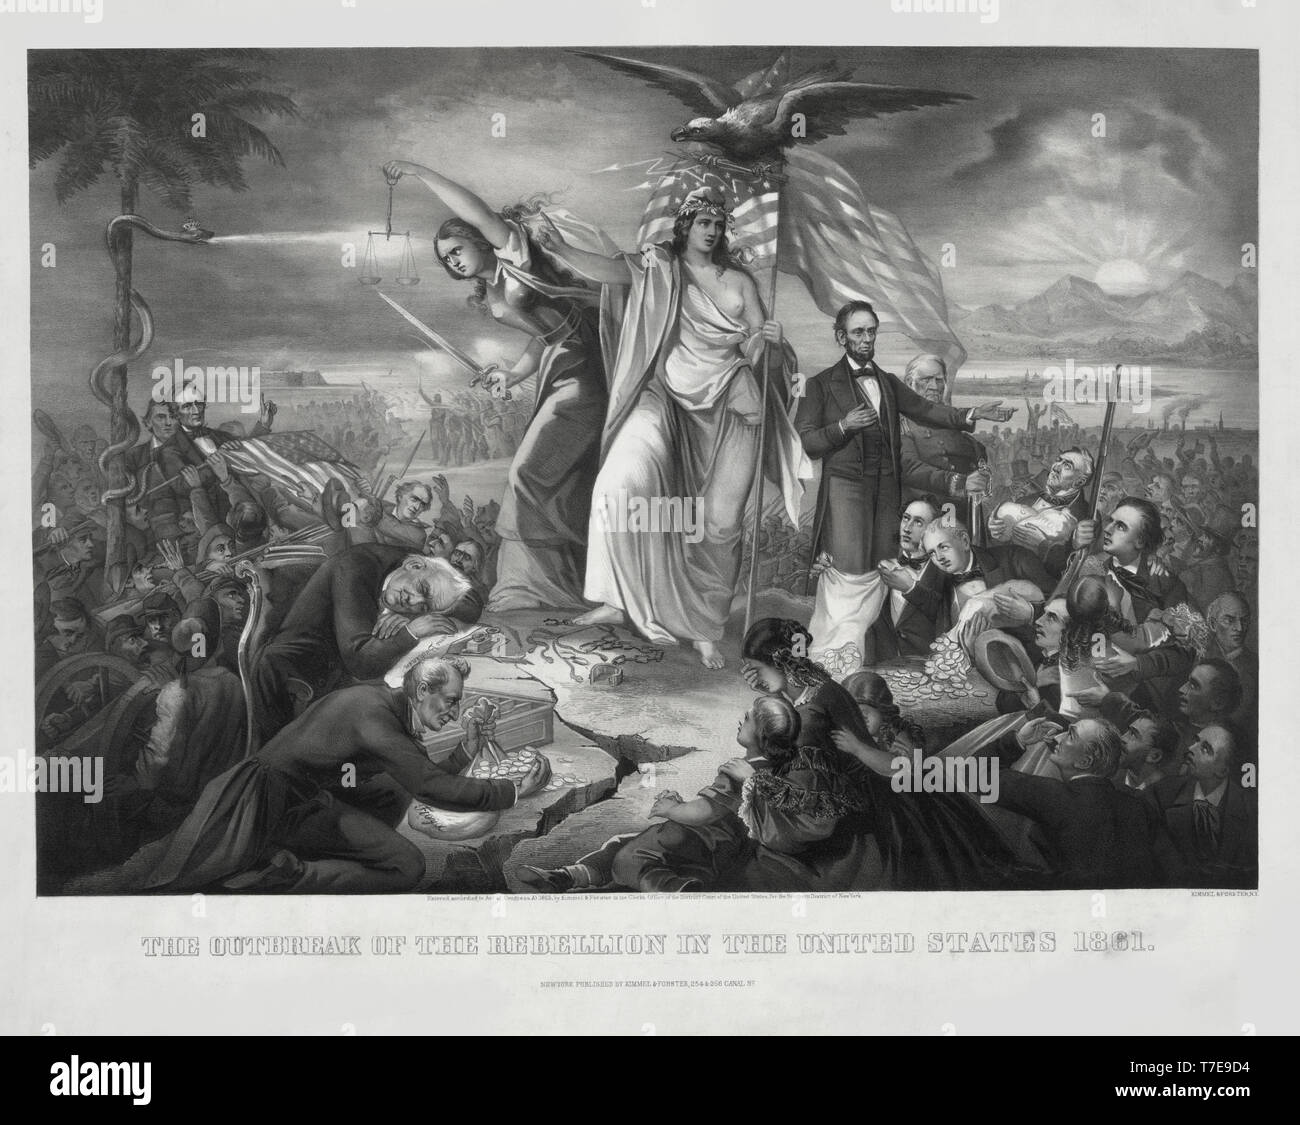 Der Ausbruch der Rebellion der Vereinigten Staaten 1861, Lithographie, Kimmel & Forster, 1865 veröffentlicht. Stockfoto